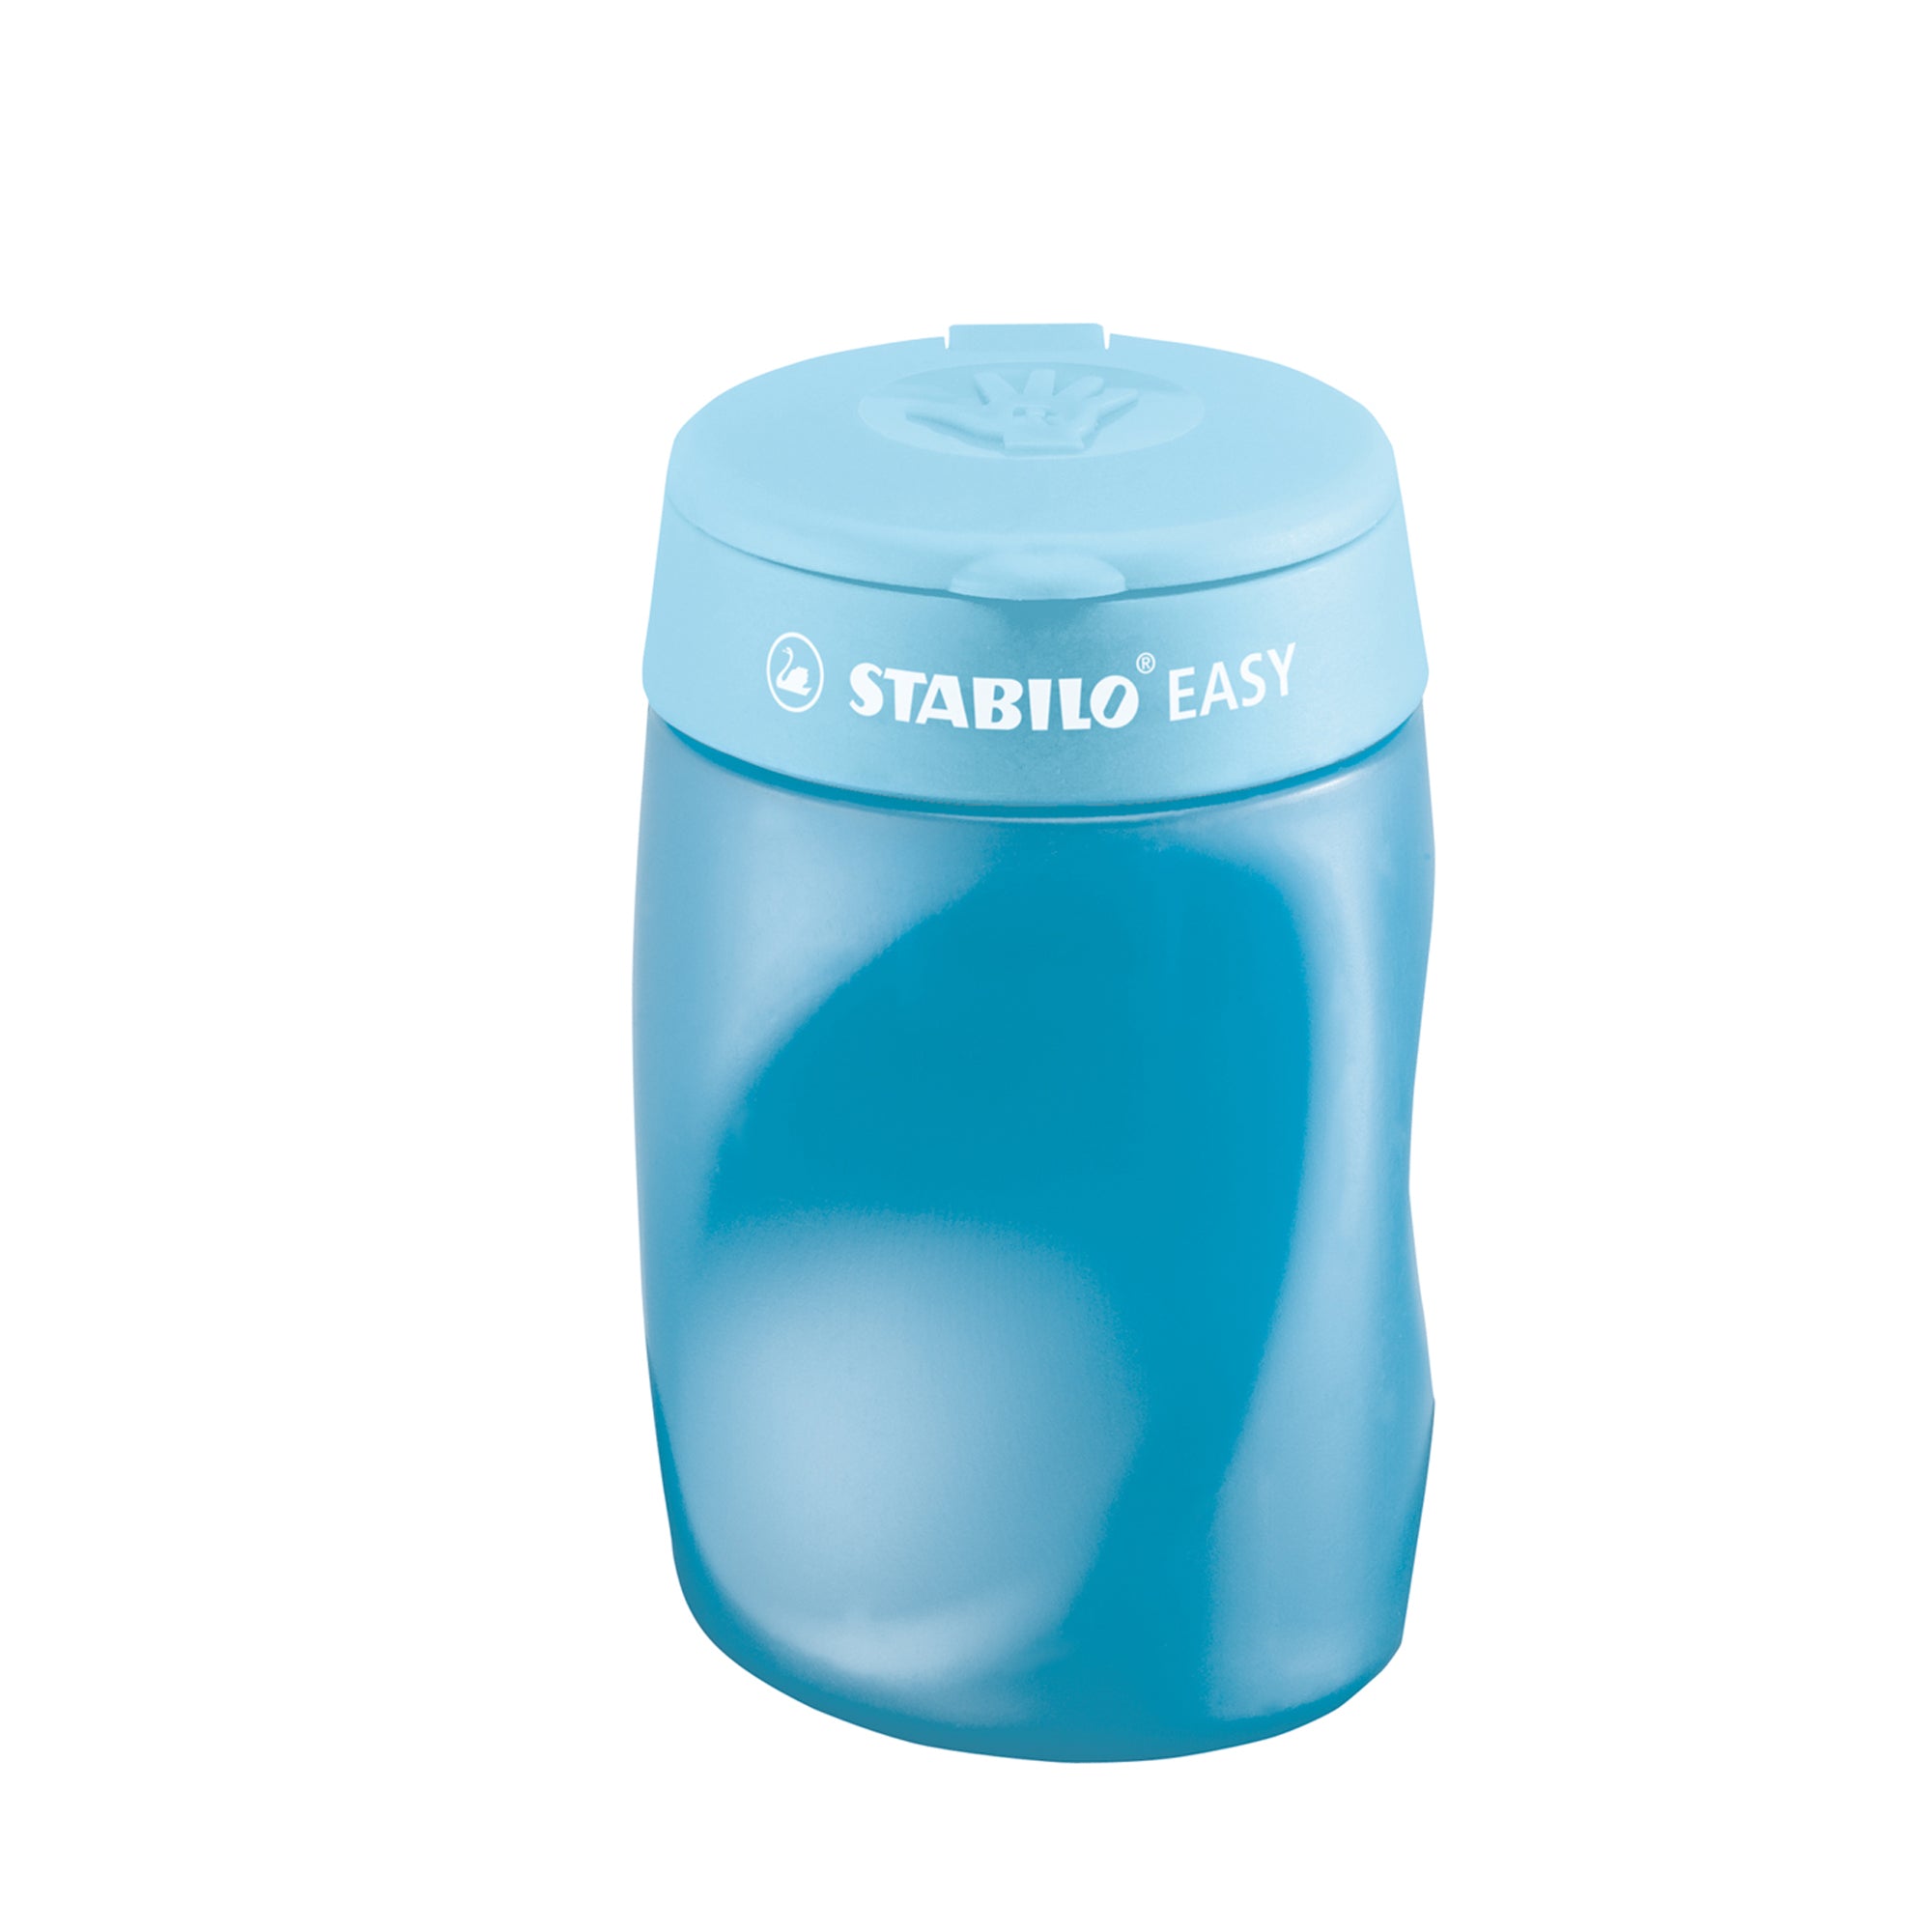 stabilo-temperamatite-easy-3-fori-c-contenitore-ergonomico-blu-destrimani